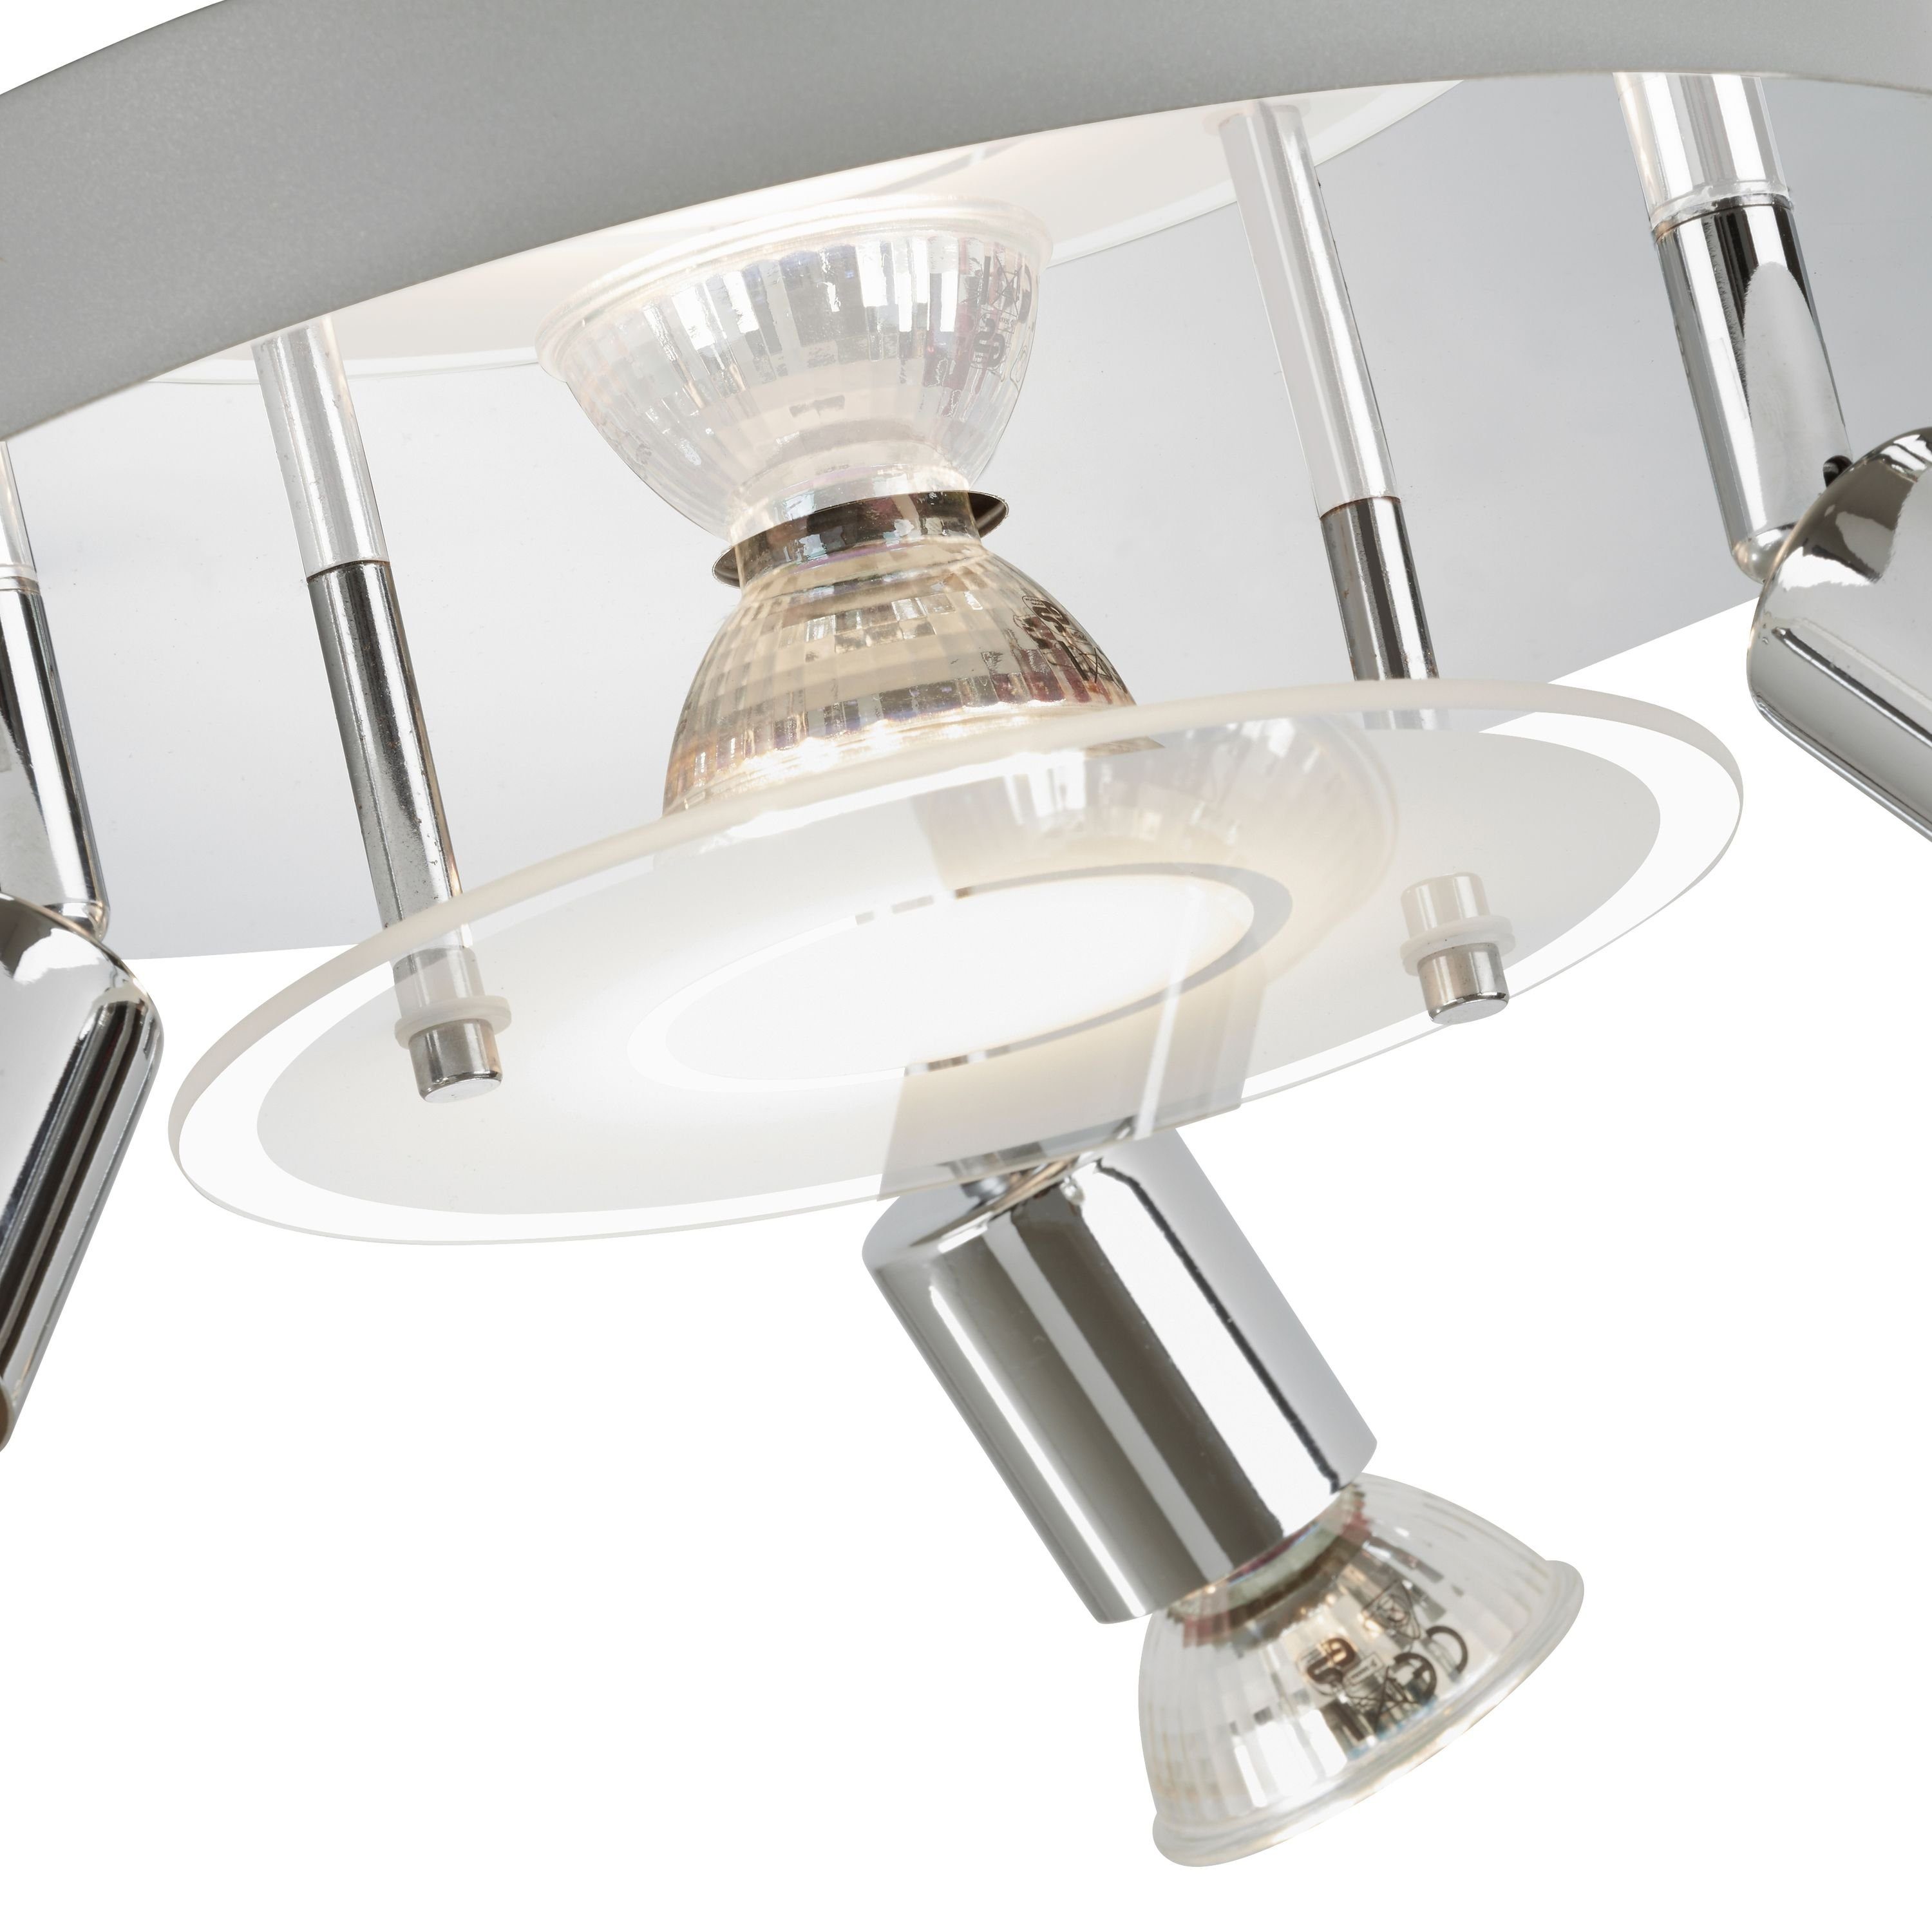 Briloner wechselbar, Deckenleuchte Warmweiß, Leuchten LED LED GU10, chrom, 3498-048, Deckenlampe